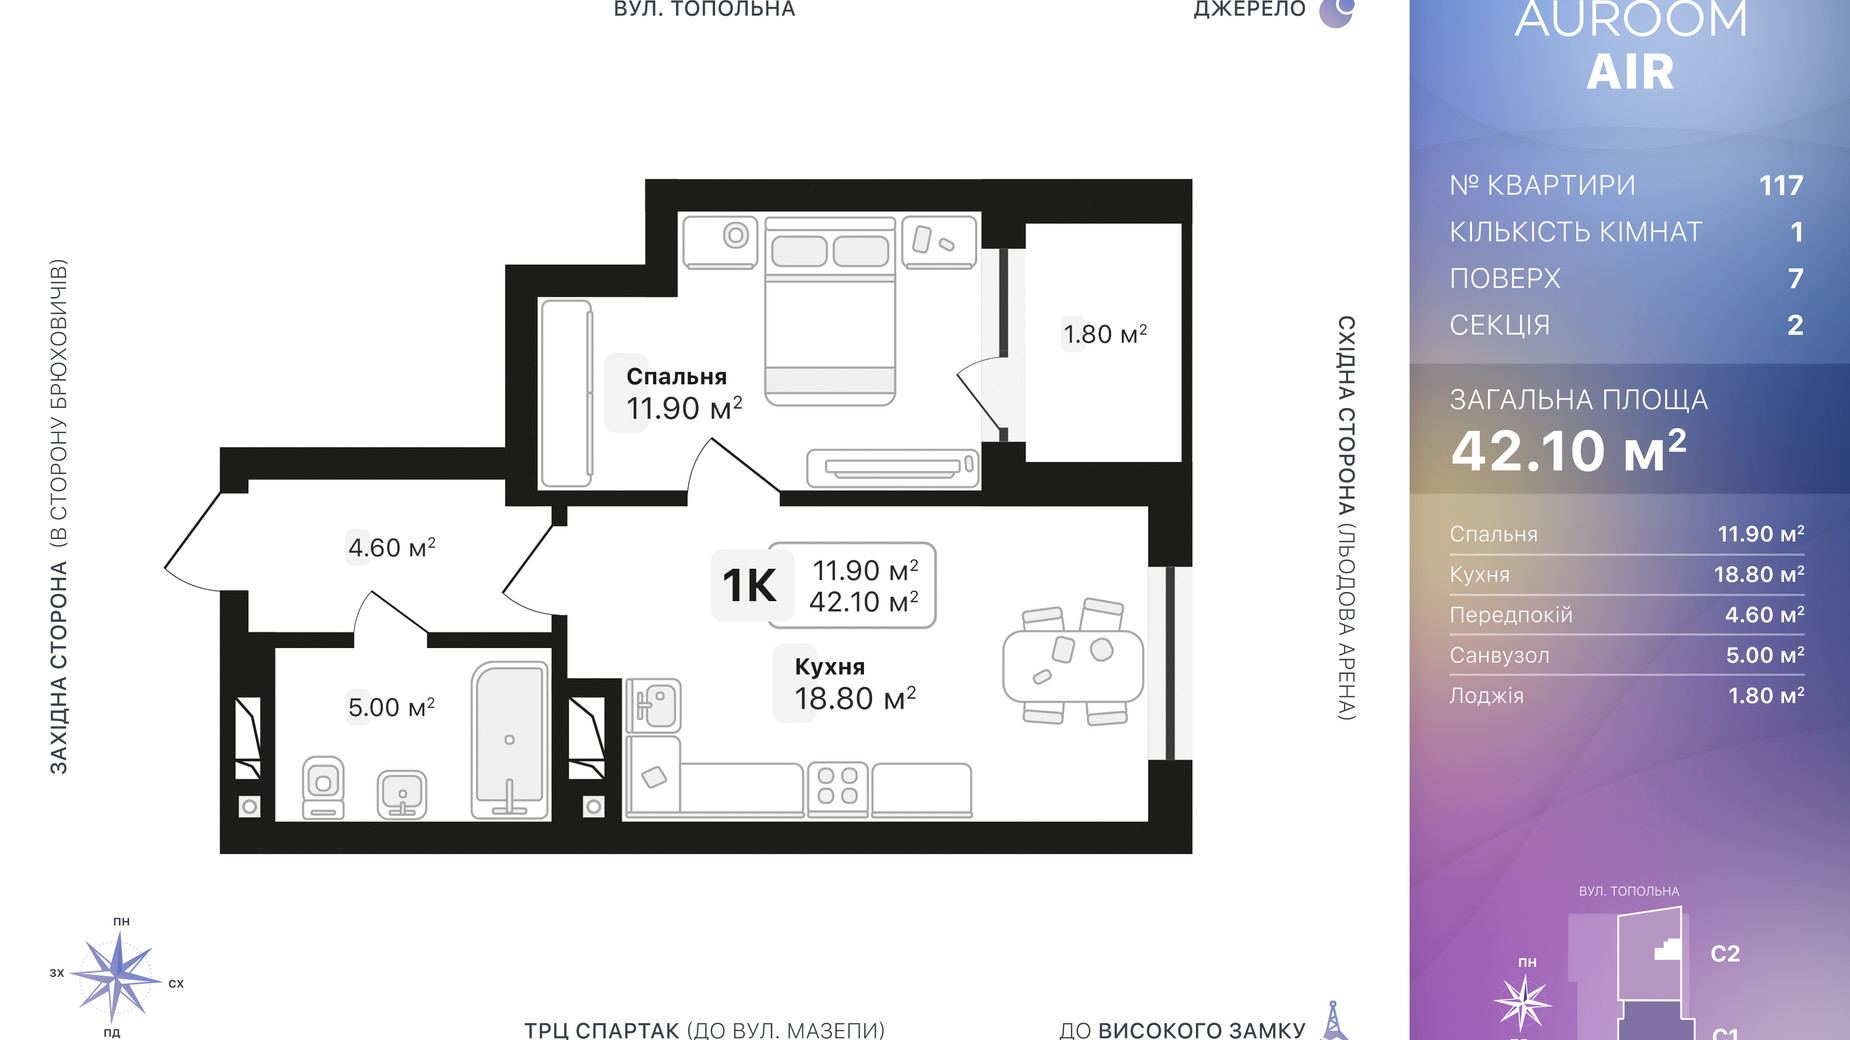 Планировка 1-комнатной квартиры в ЖК Auroom Air 42.1 м², фото 552365